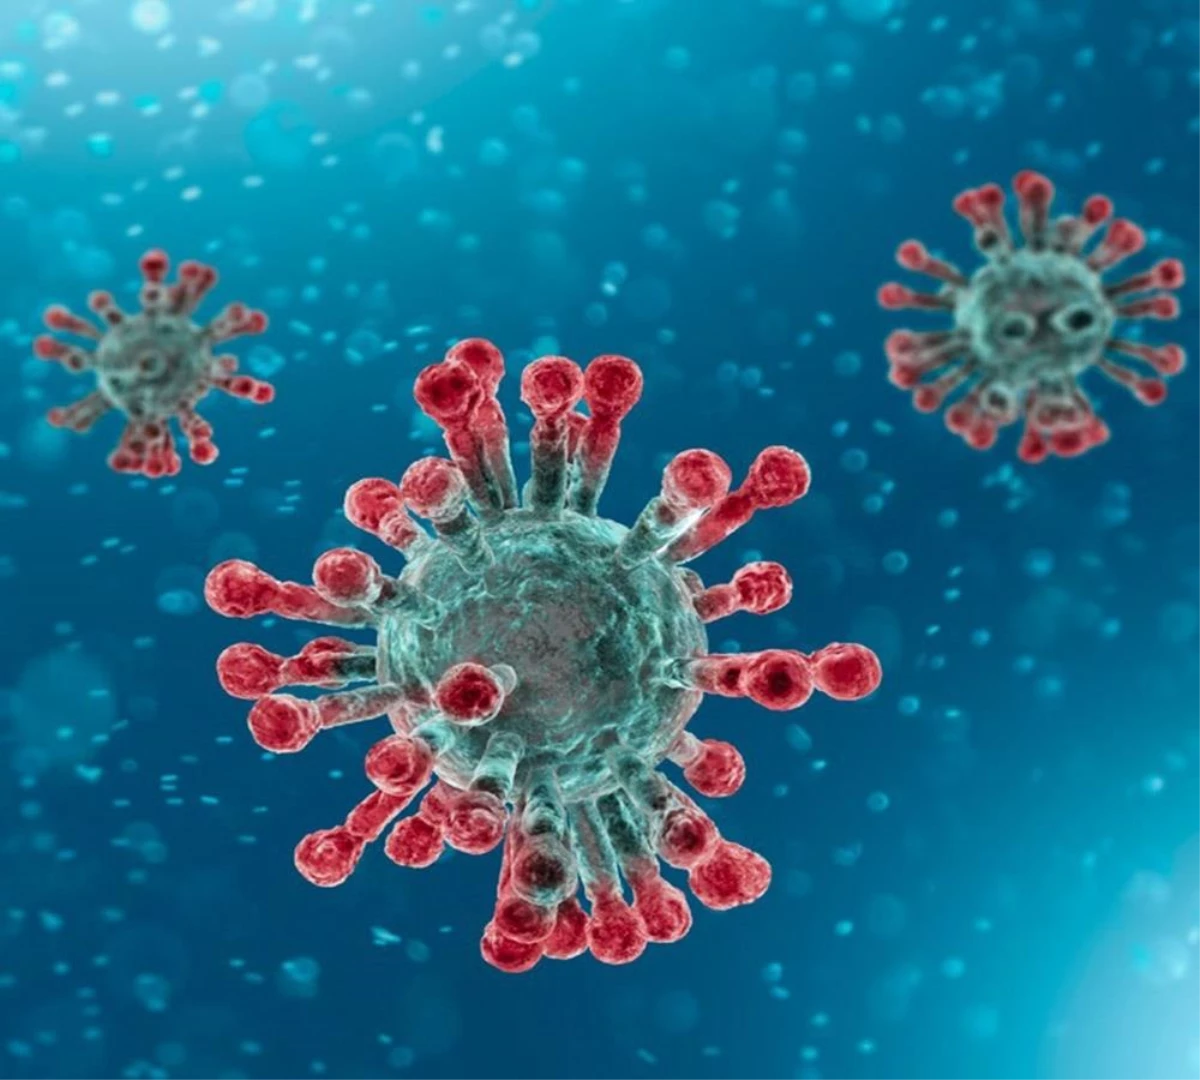 "Korona virüs yayılmaya devam ettiği sürece yeni varyant ve mutasyonlar göreceğiz"